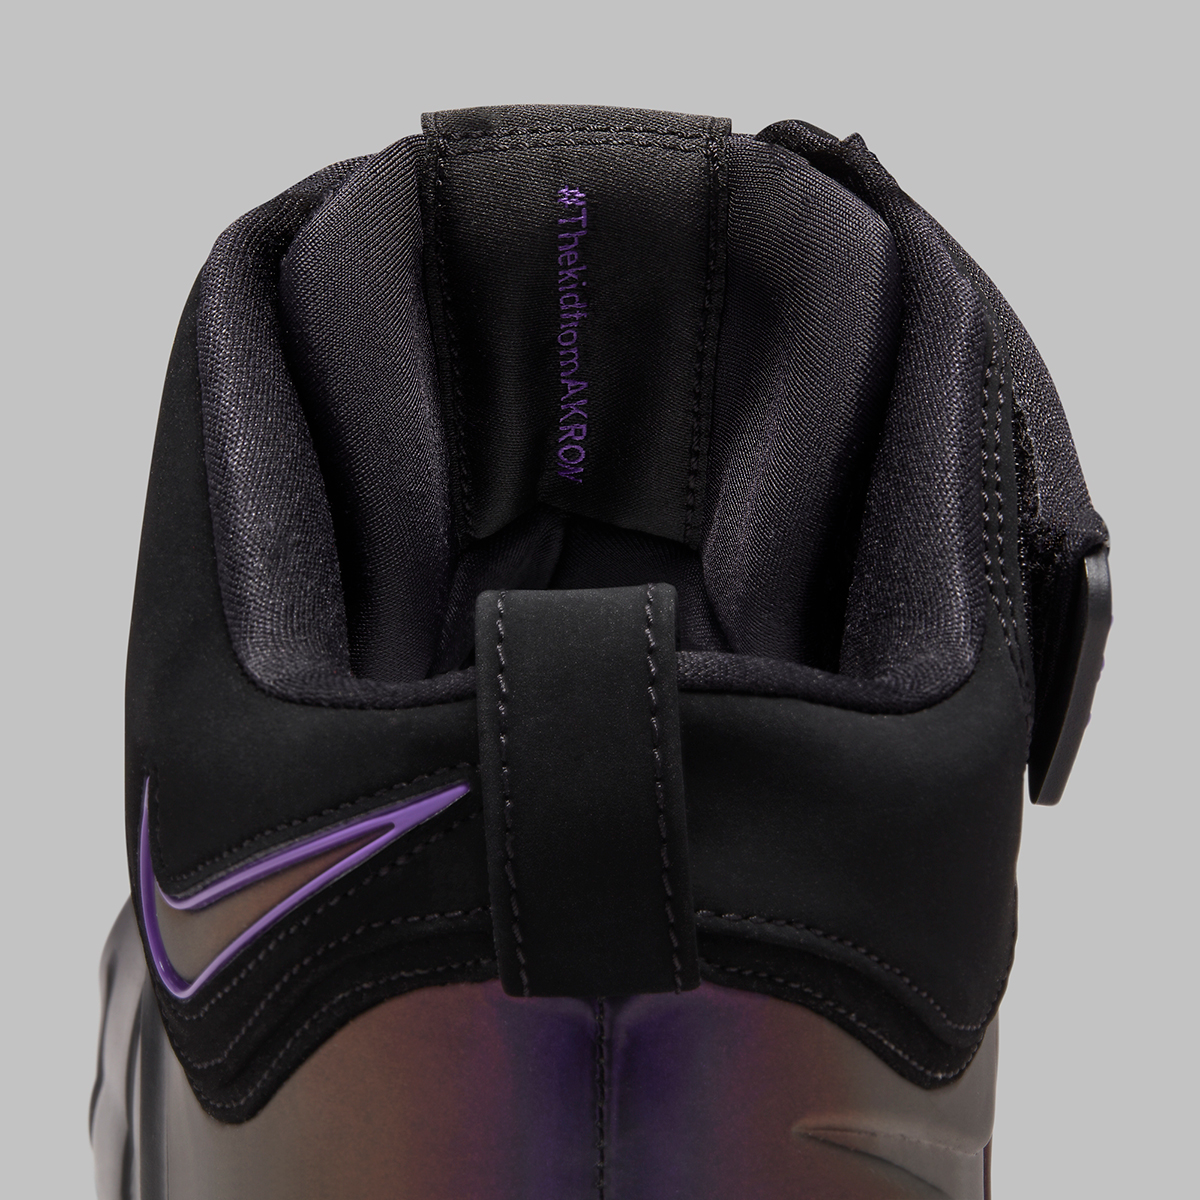 Nike Lebron Eggplant Fn6251 001 Release Date 1